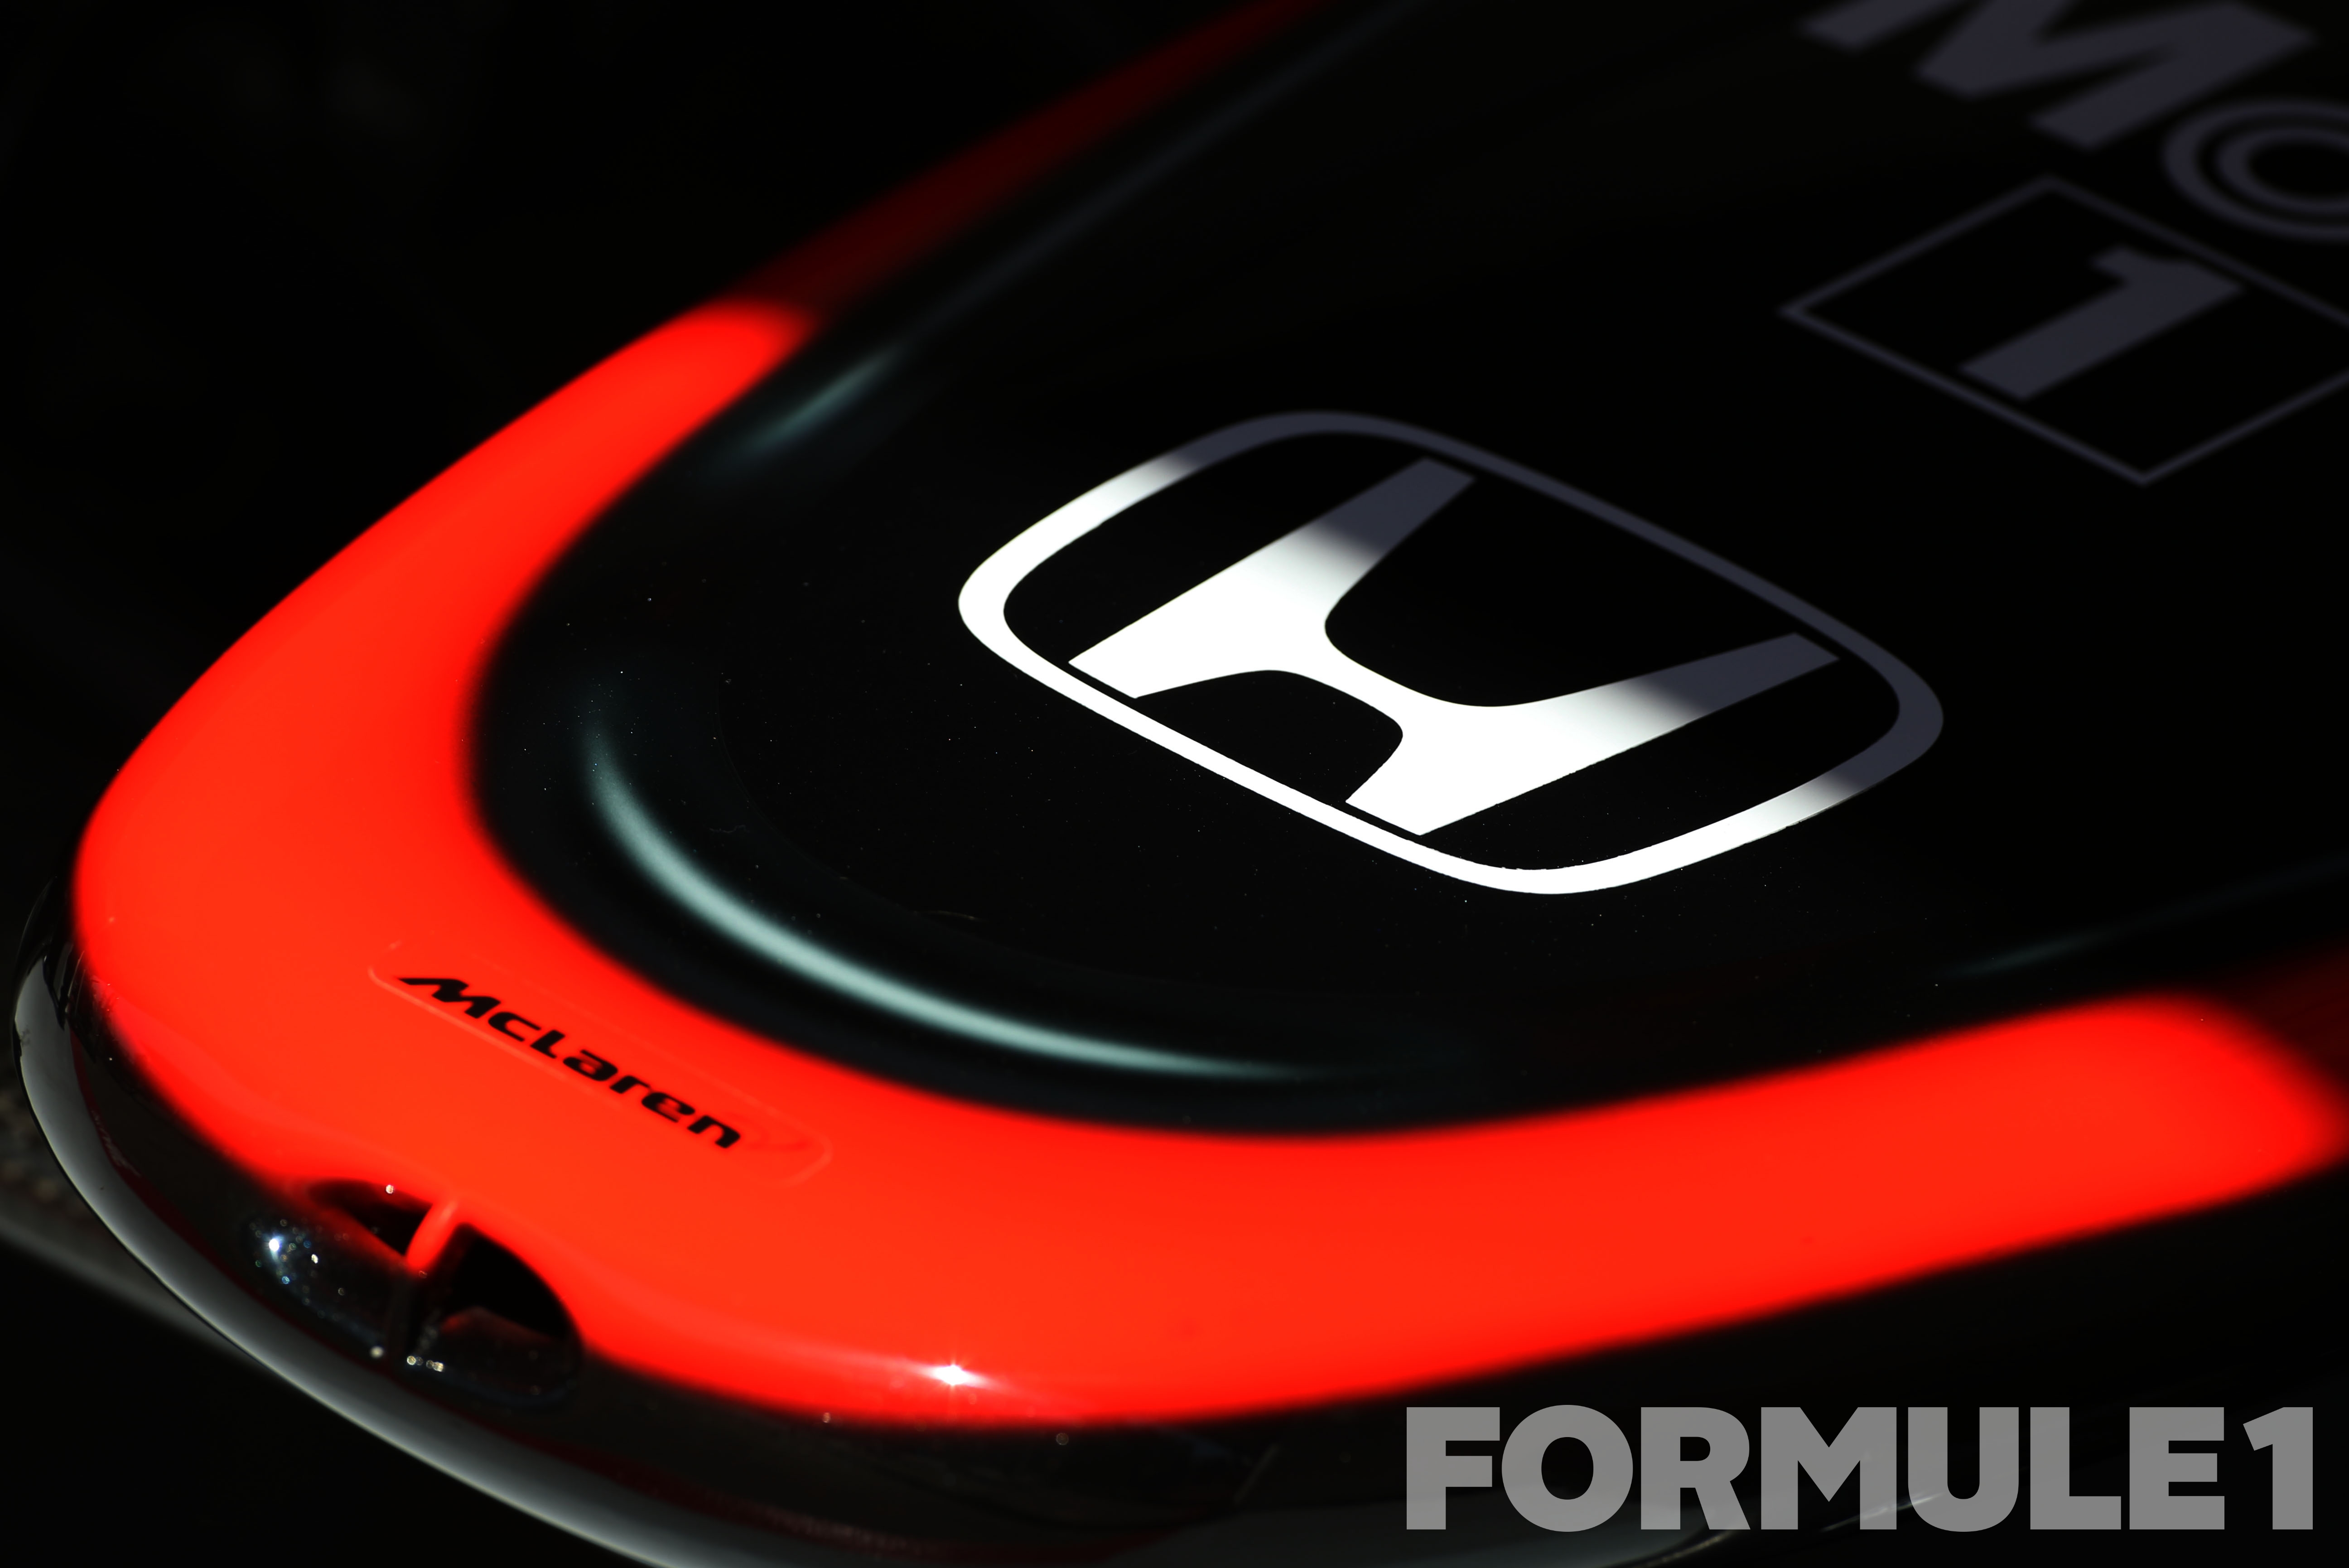 Honda rekent op nieuwe gridstraffen voor Button en Alonso